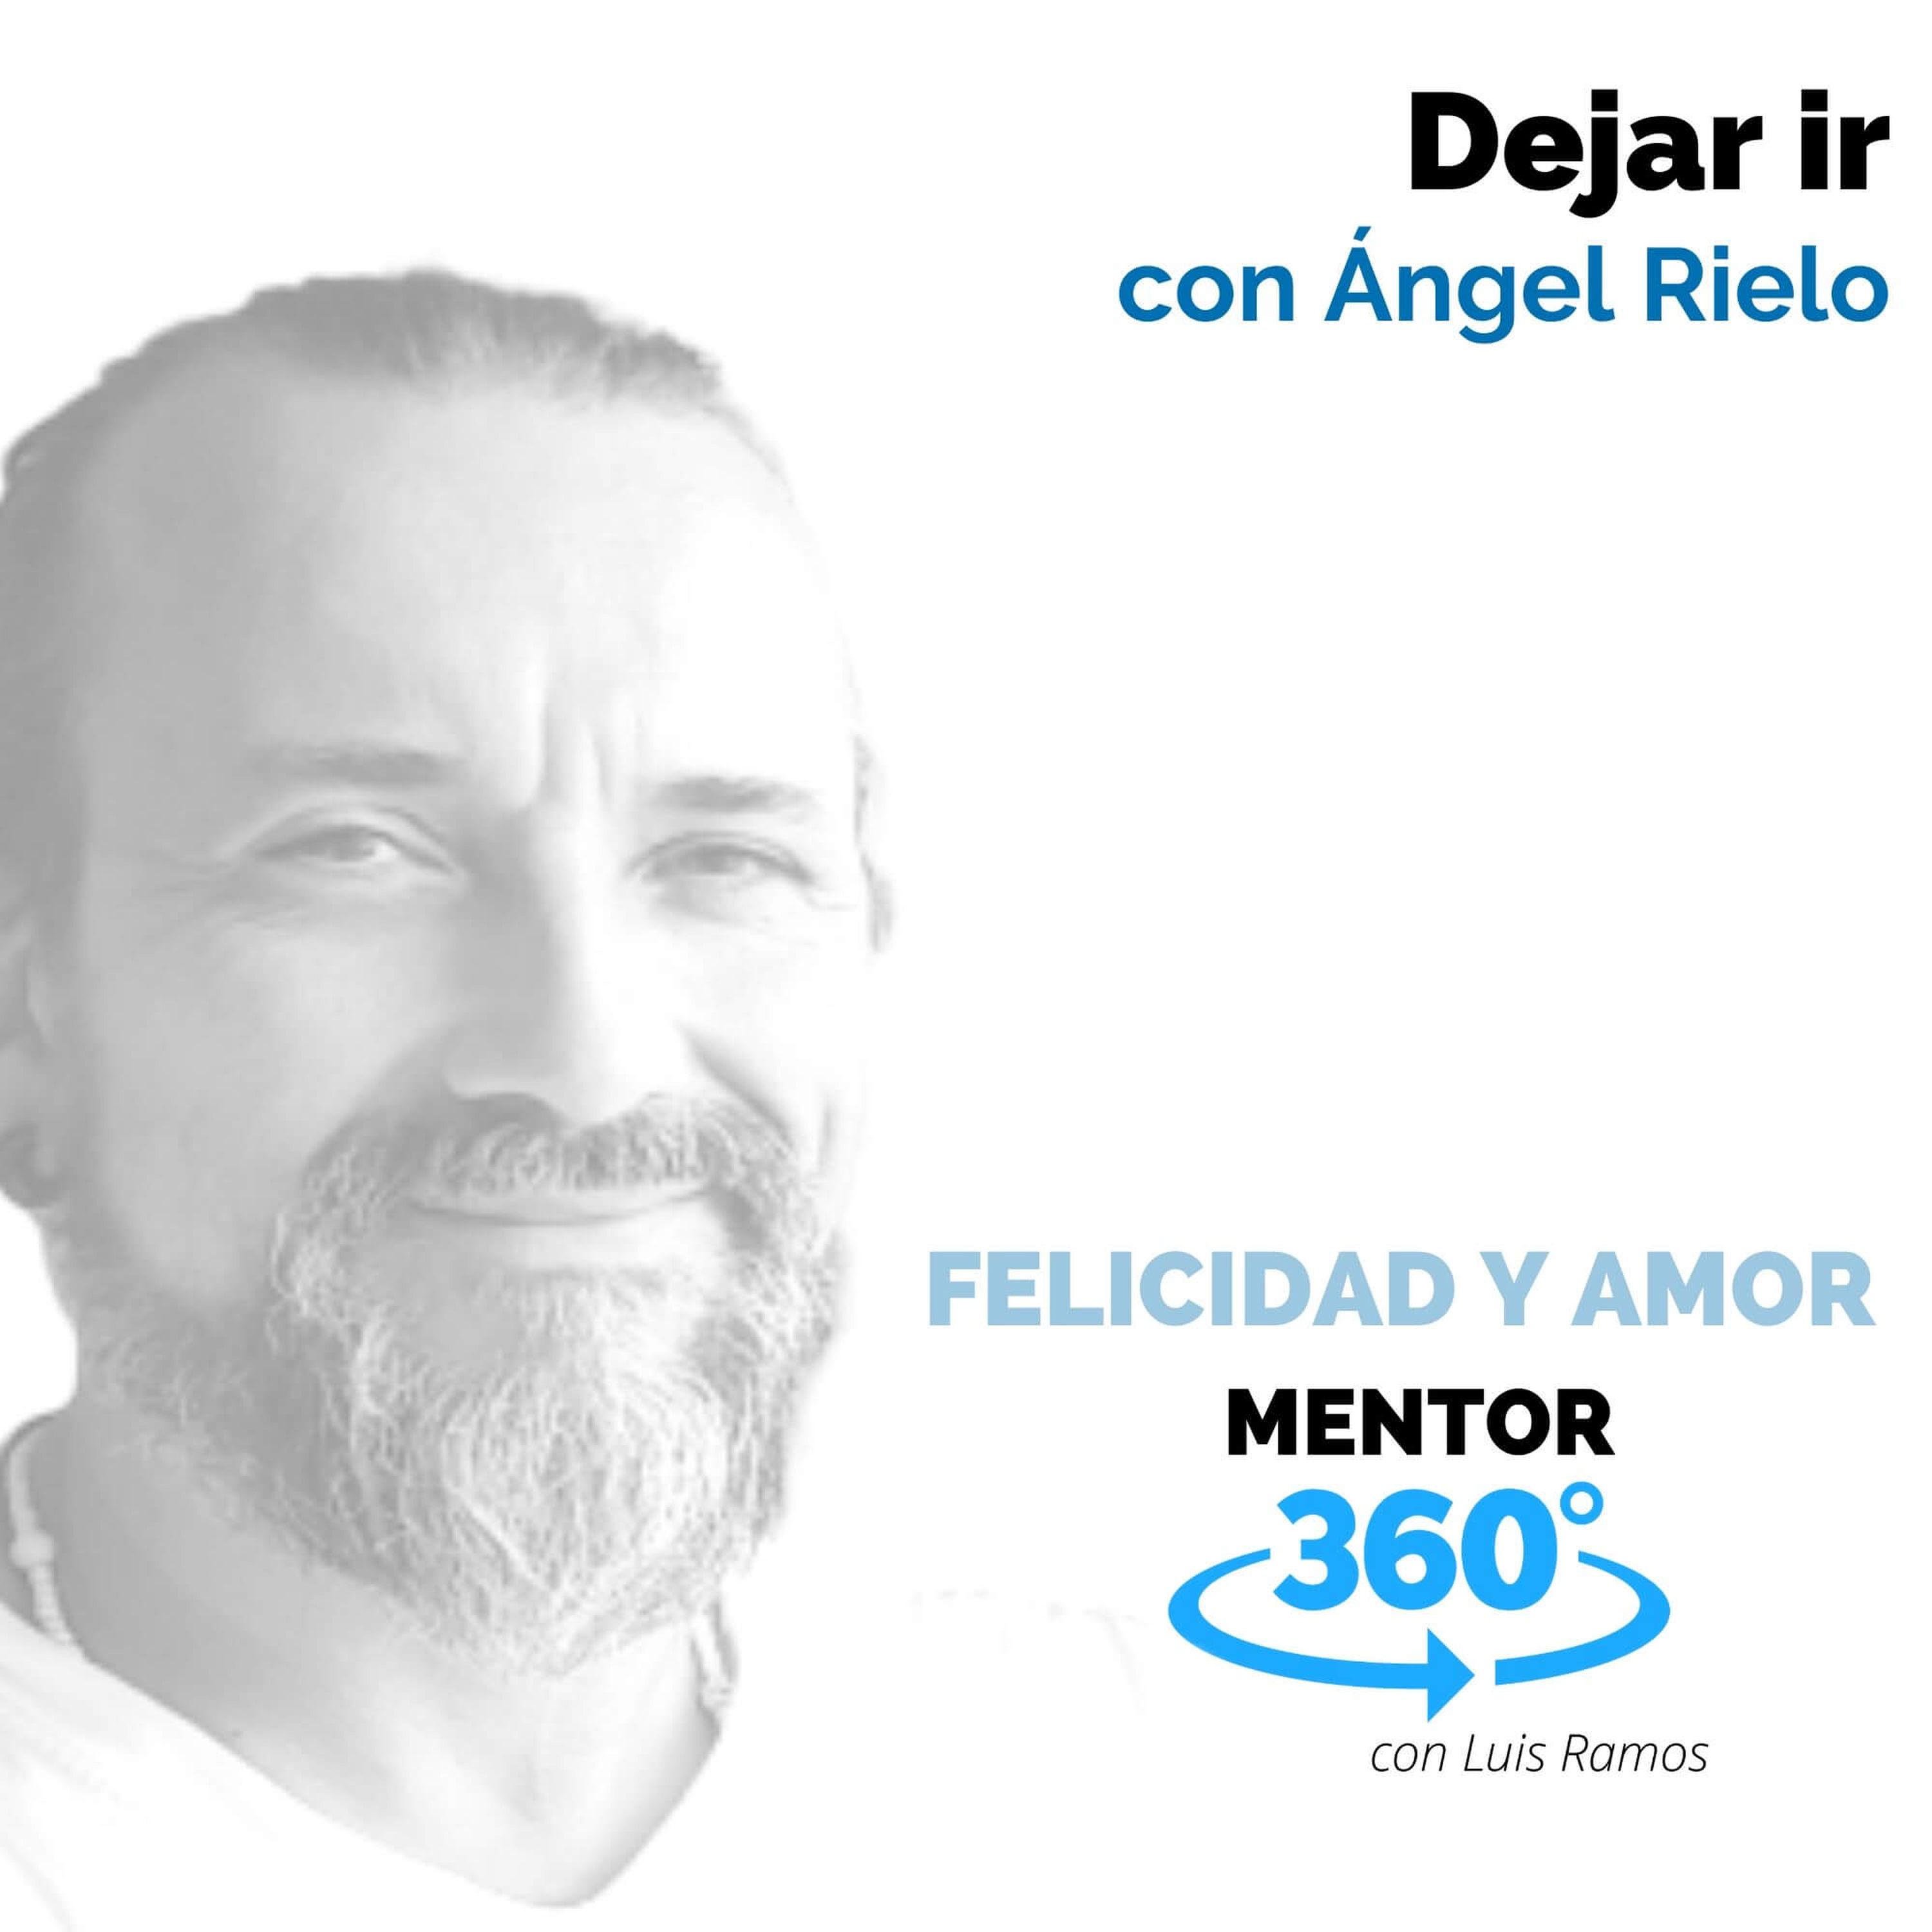 Dejar ir, con Ángel Rielo - FELICIDAD Y AMOR